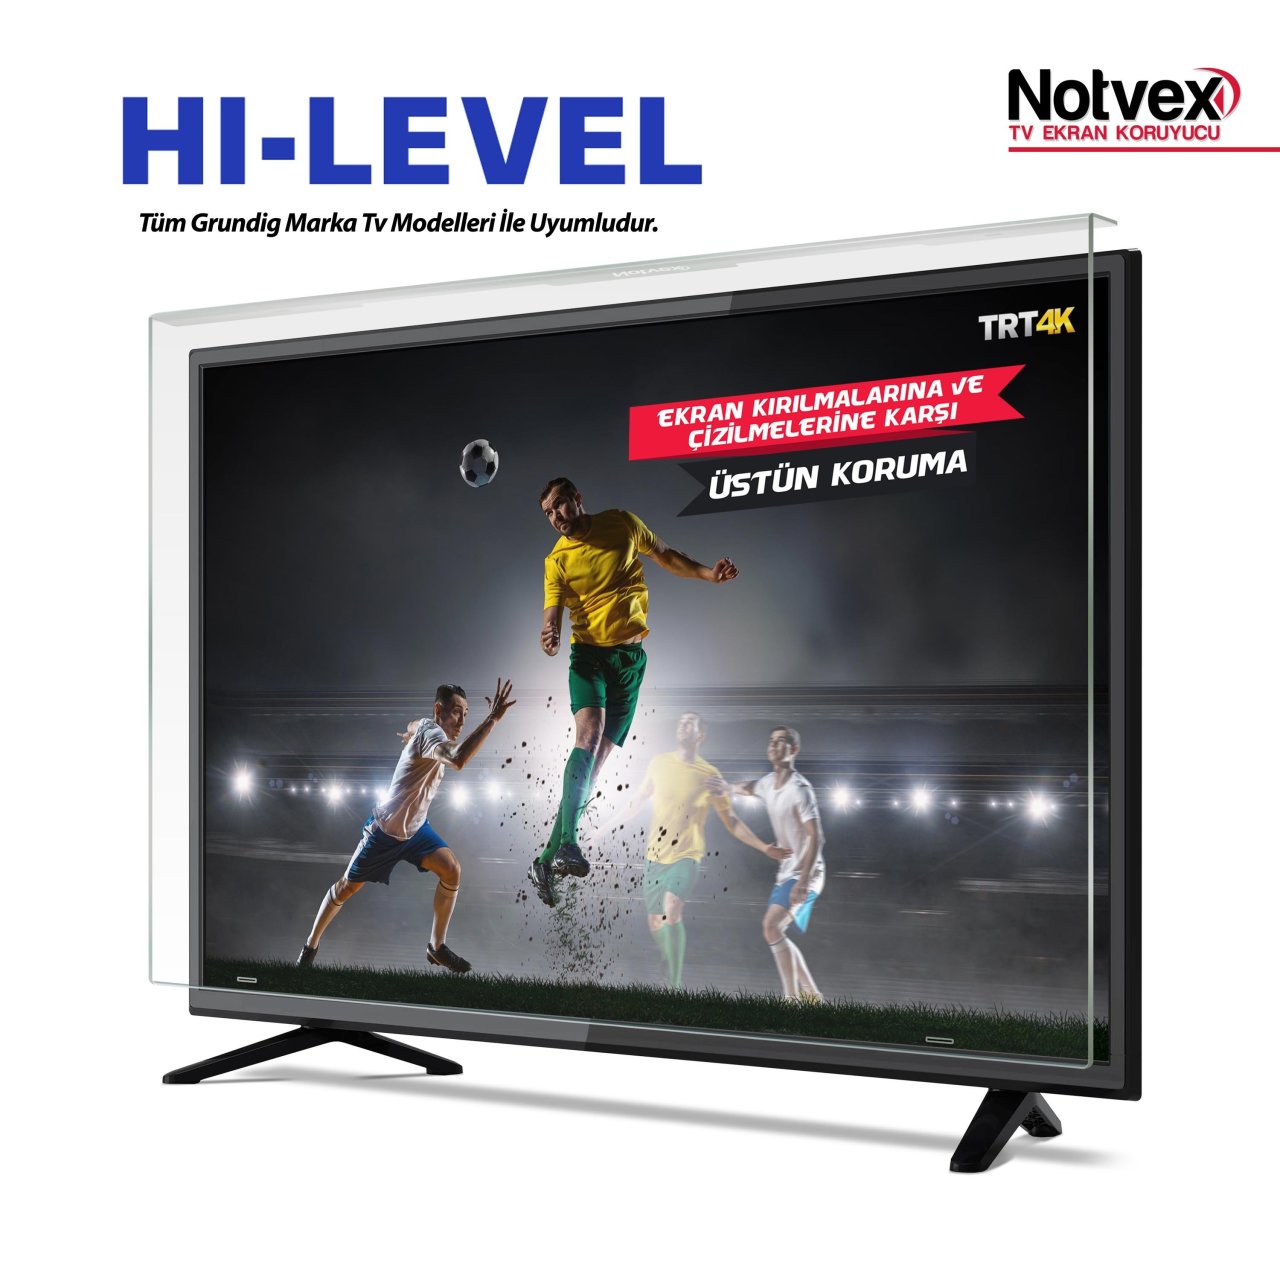 Hi-Level 49HL660 Uyumlu TV Ekran Koruyucu